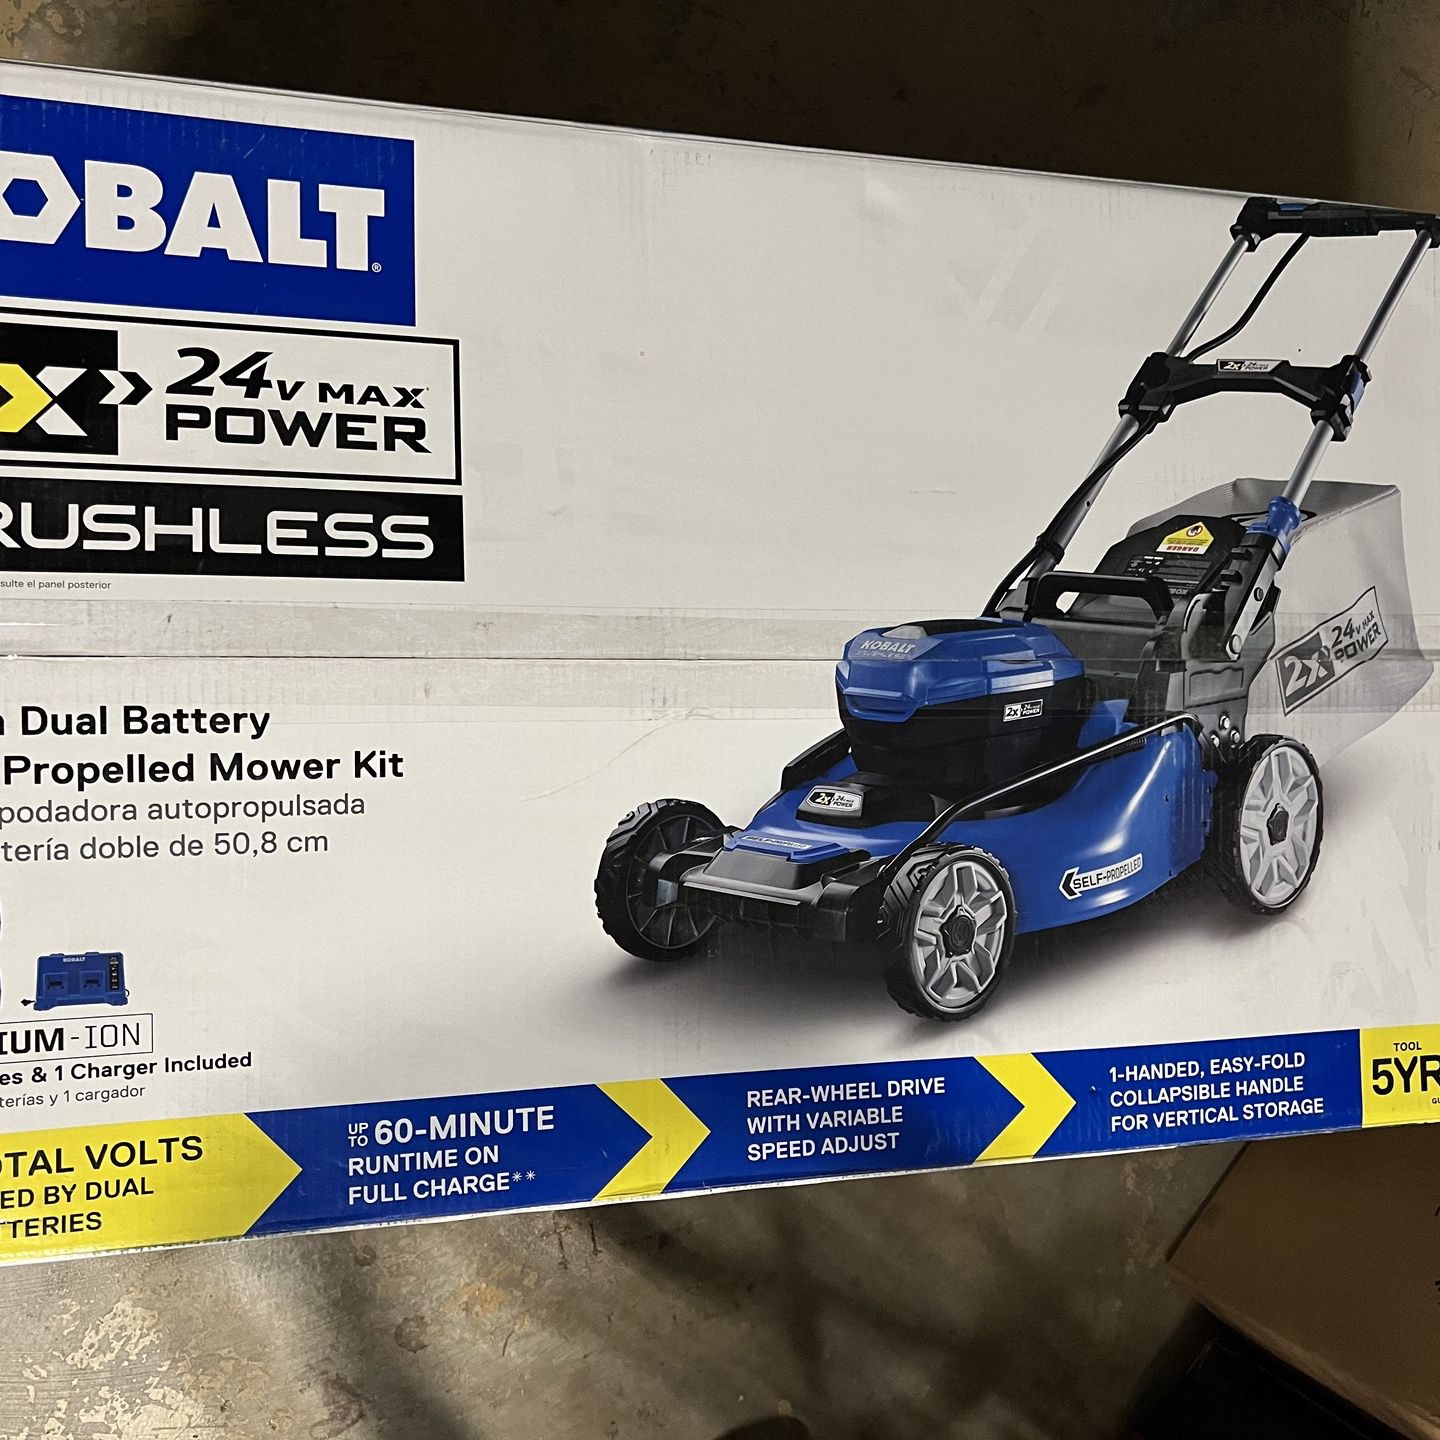 NEW Kobalt 24V Brushless 20" Cordless Self-Propelled Lawn Mower #KLMS 2524-03